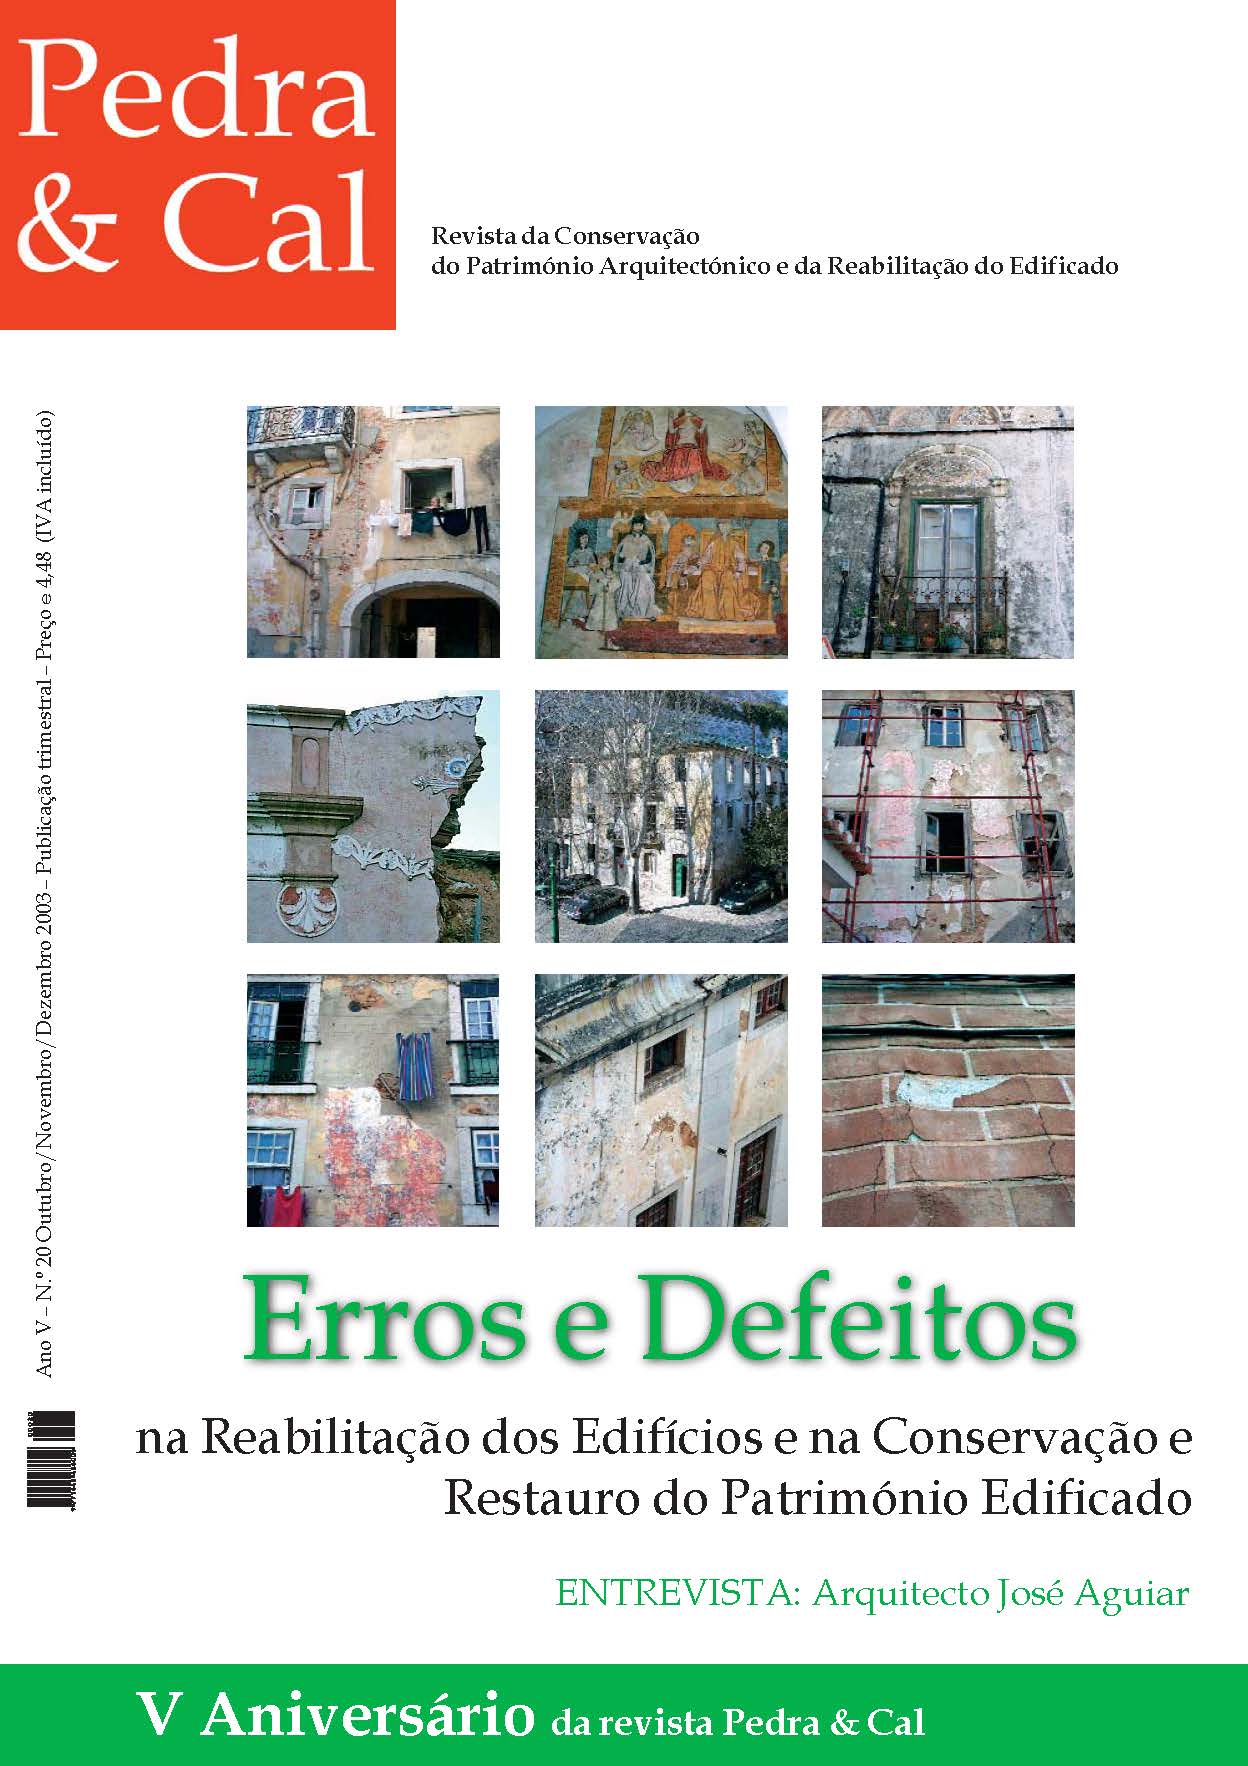 Erros e Defeitos na Reabilitação dos Edifícios e na Conservação e Restauro do Património Edificado